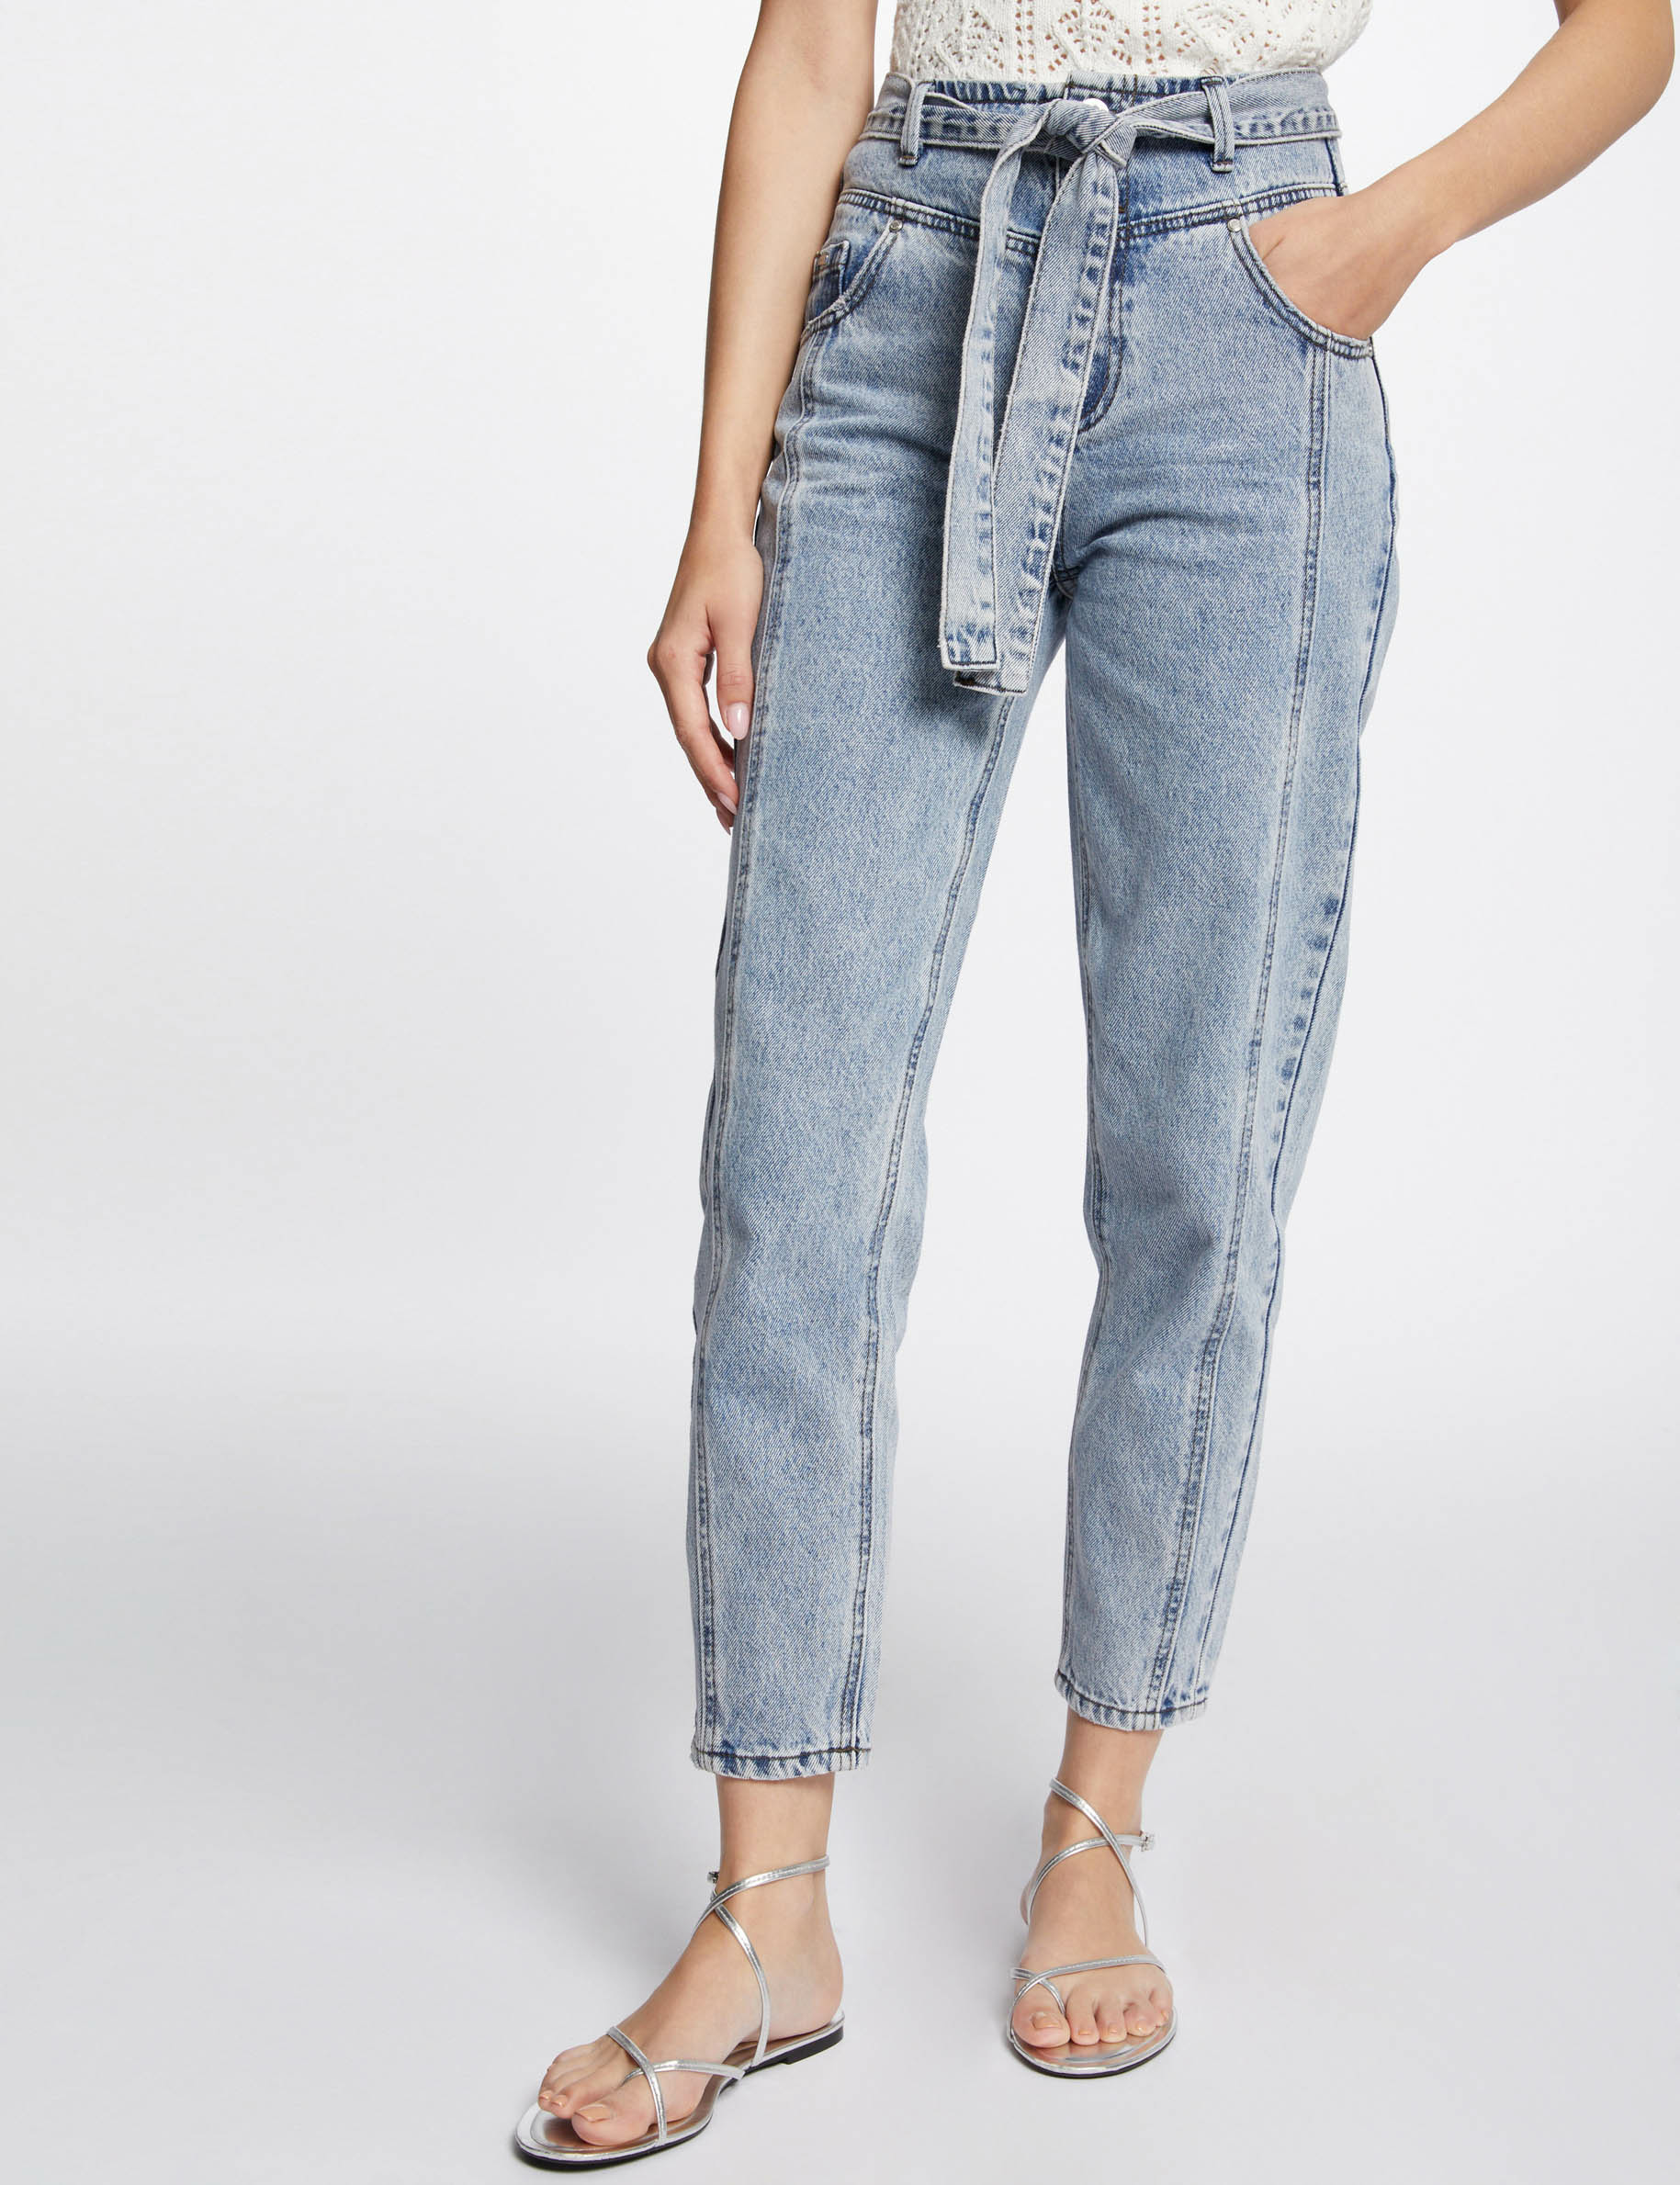 Jeans regular ceinturé 7/8ème jean bleached femme